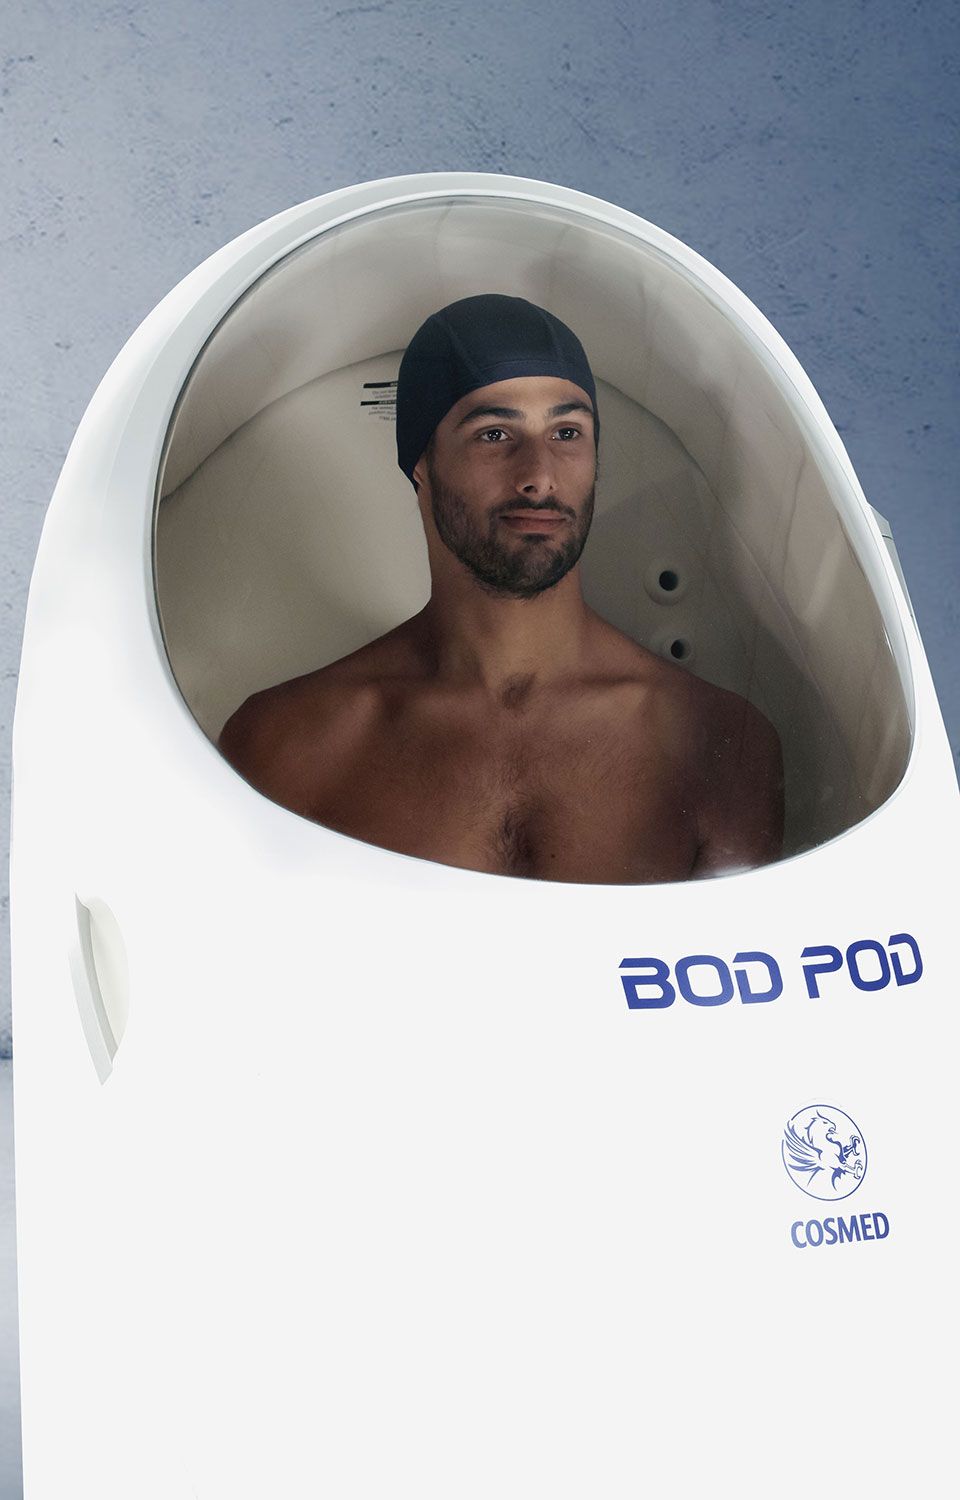 BOD POD GS-X - Test della composizione corporea su soggetto maschile